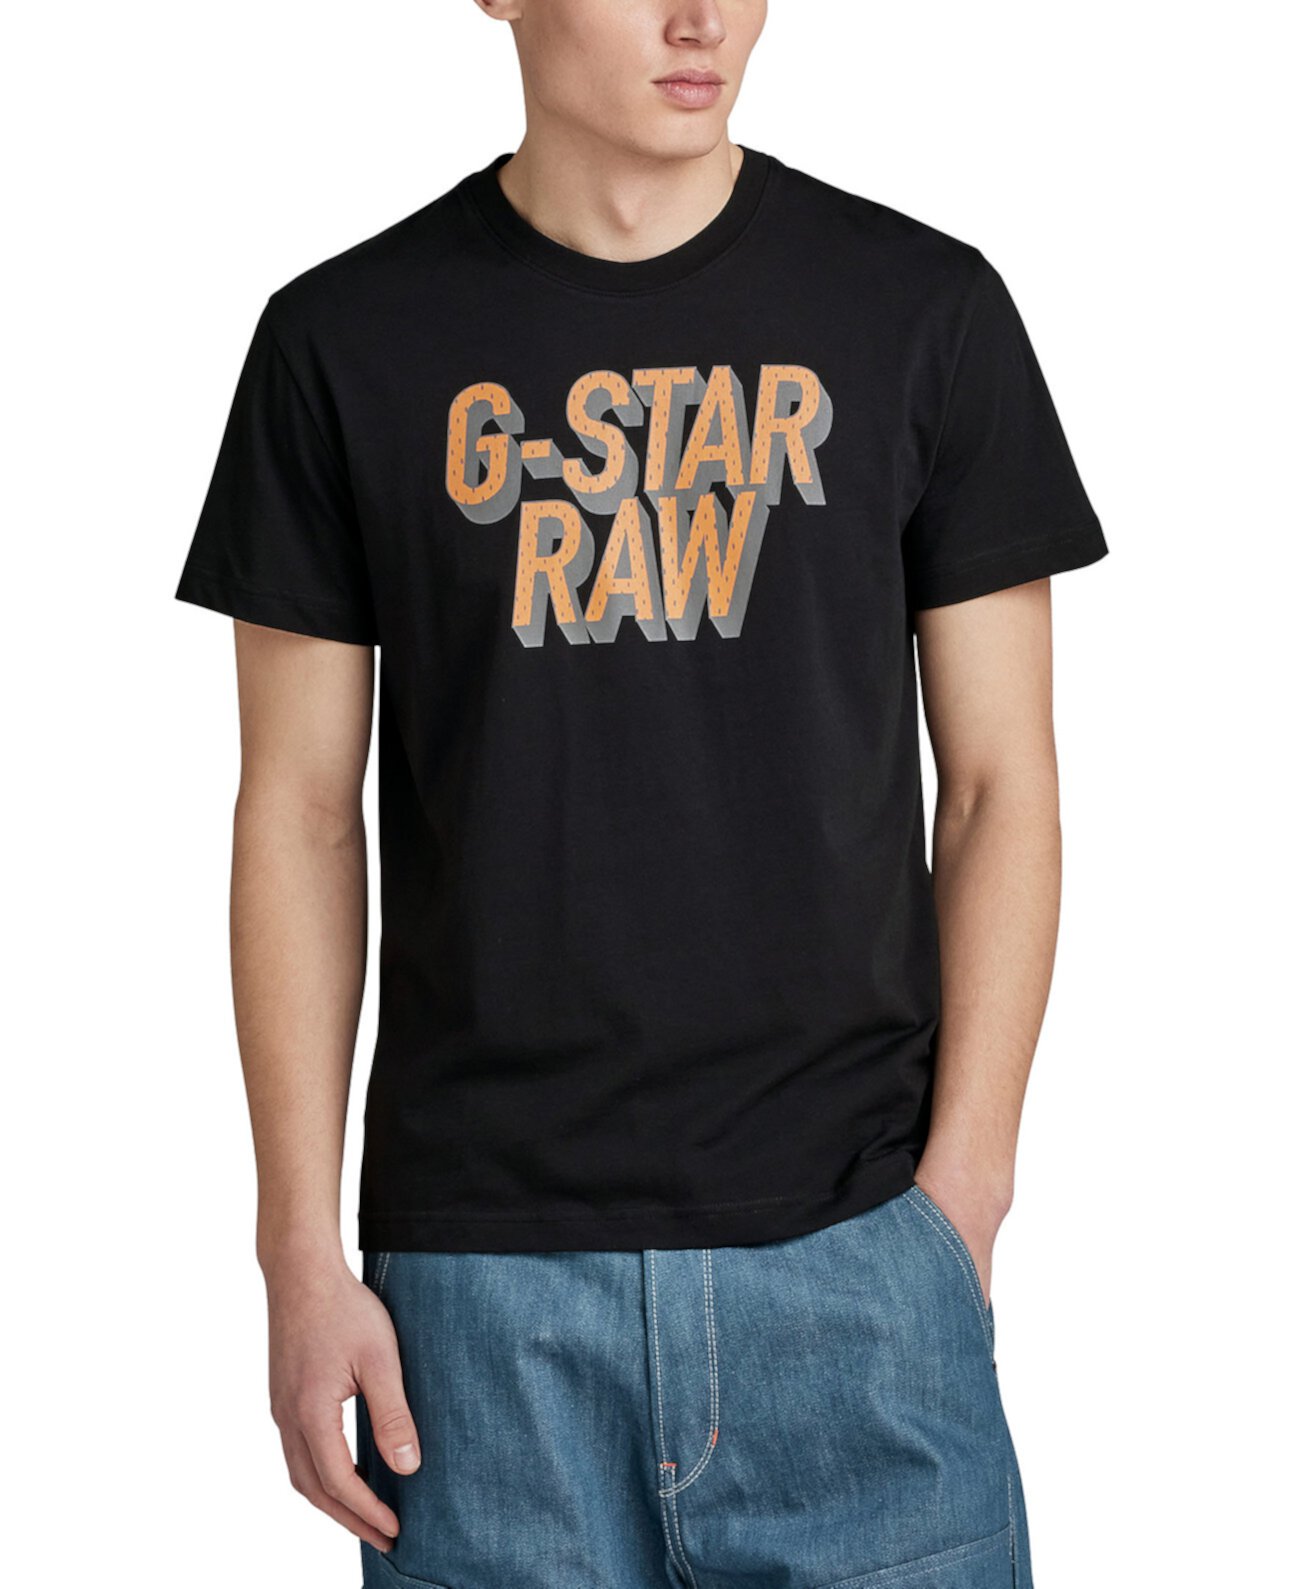 Мужская футболка обычного кроя с 3D-логотипом в горошек G-STAR RAW